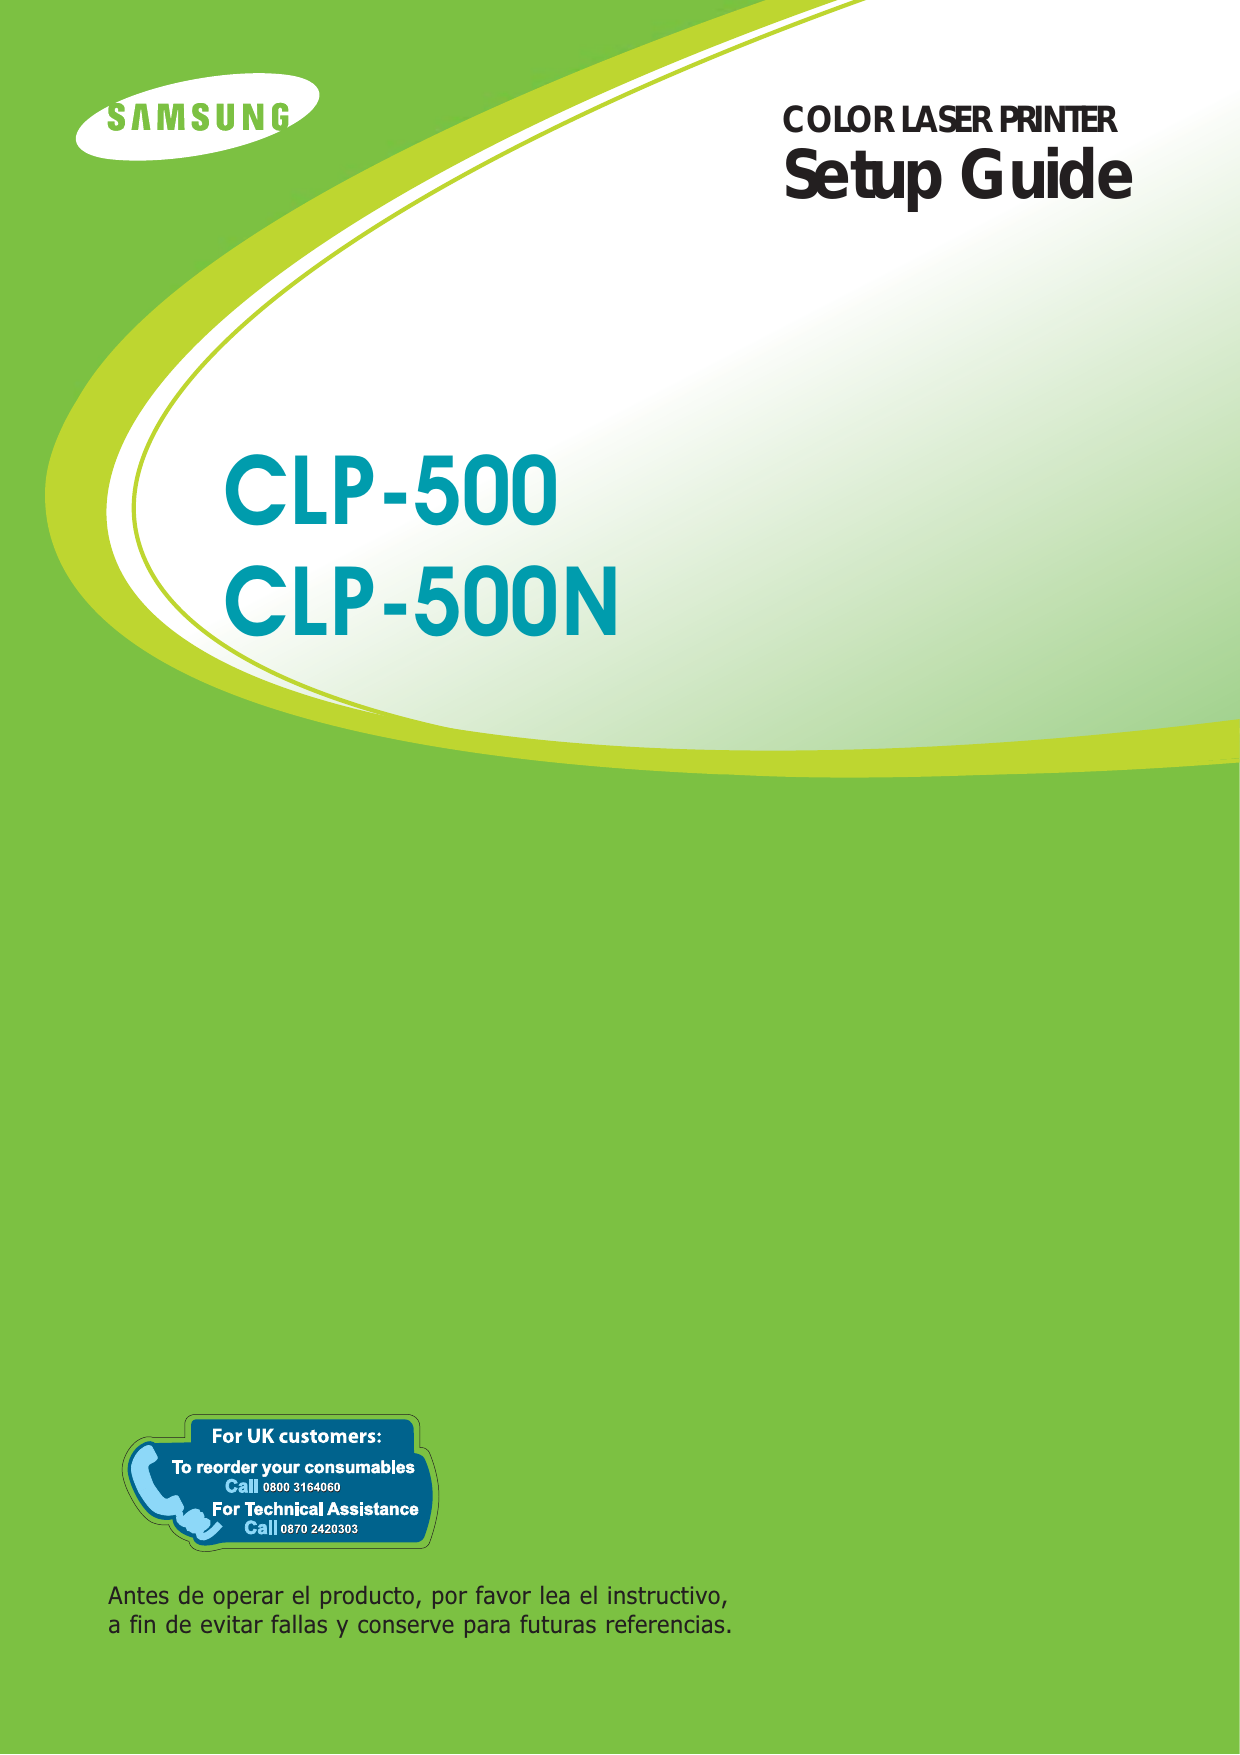 COLOR LASER PRINTERSetup GuideAntes de operar el producto, por favor lea el instructivo,a fin de evitar fallas y conserve para futuras referencias.CLP-500CLP-500N